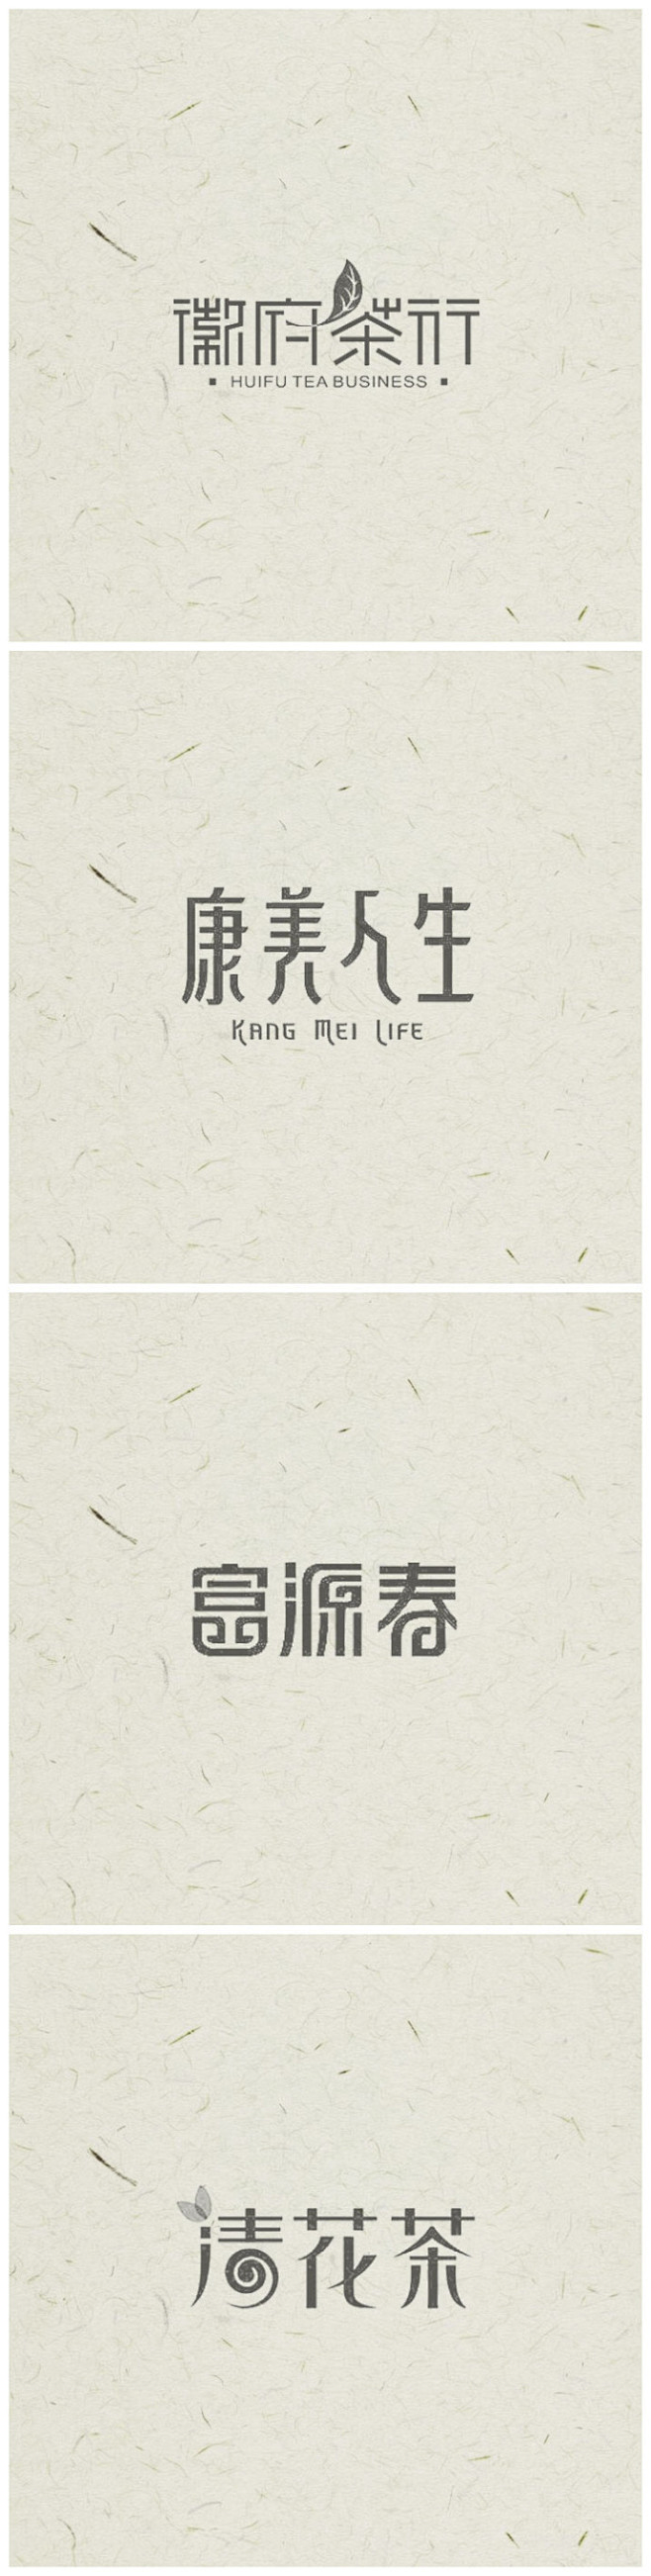 中国风logo设计，感受中国汉字之美 ​...